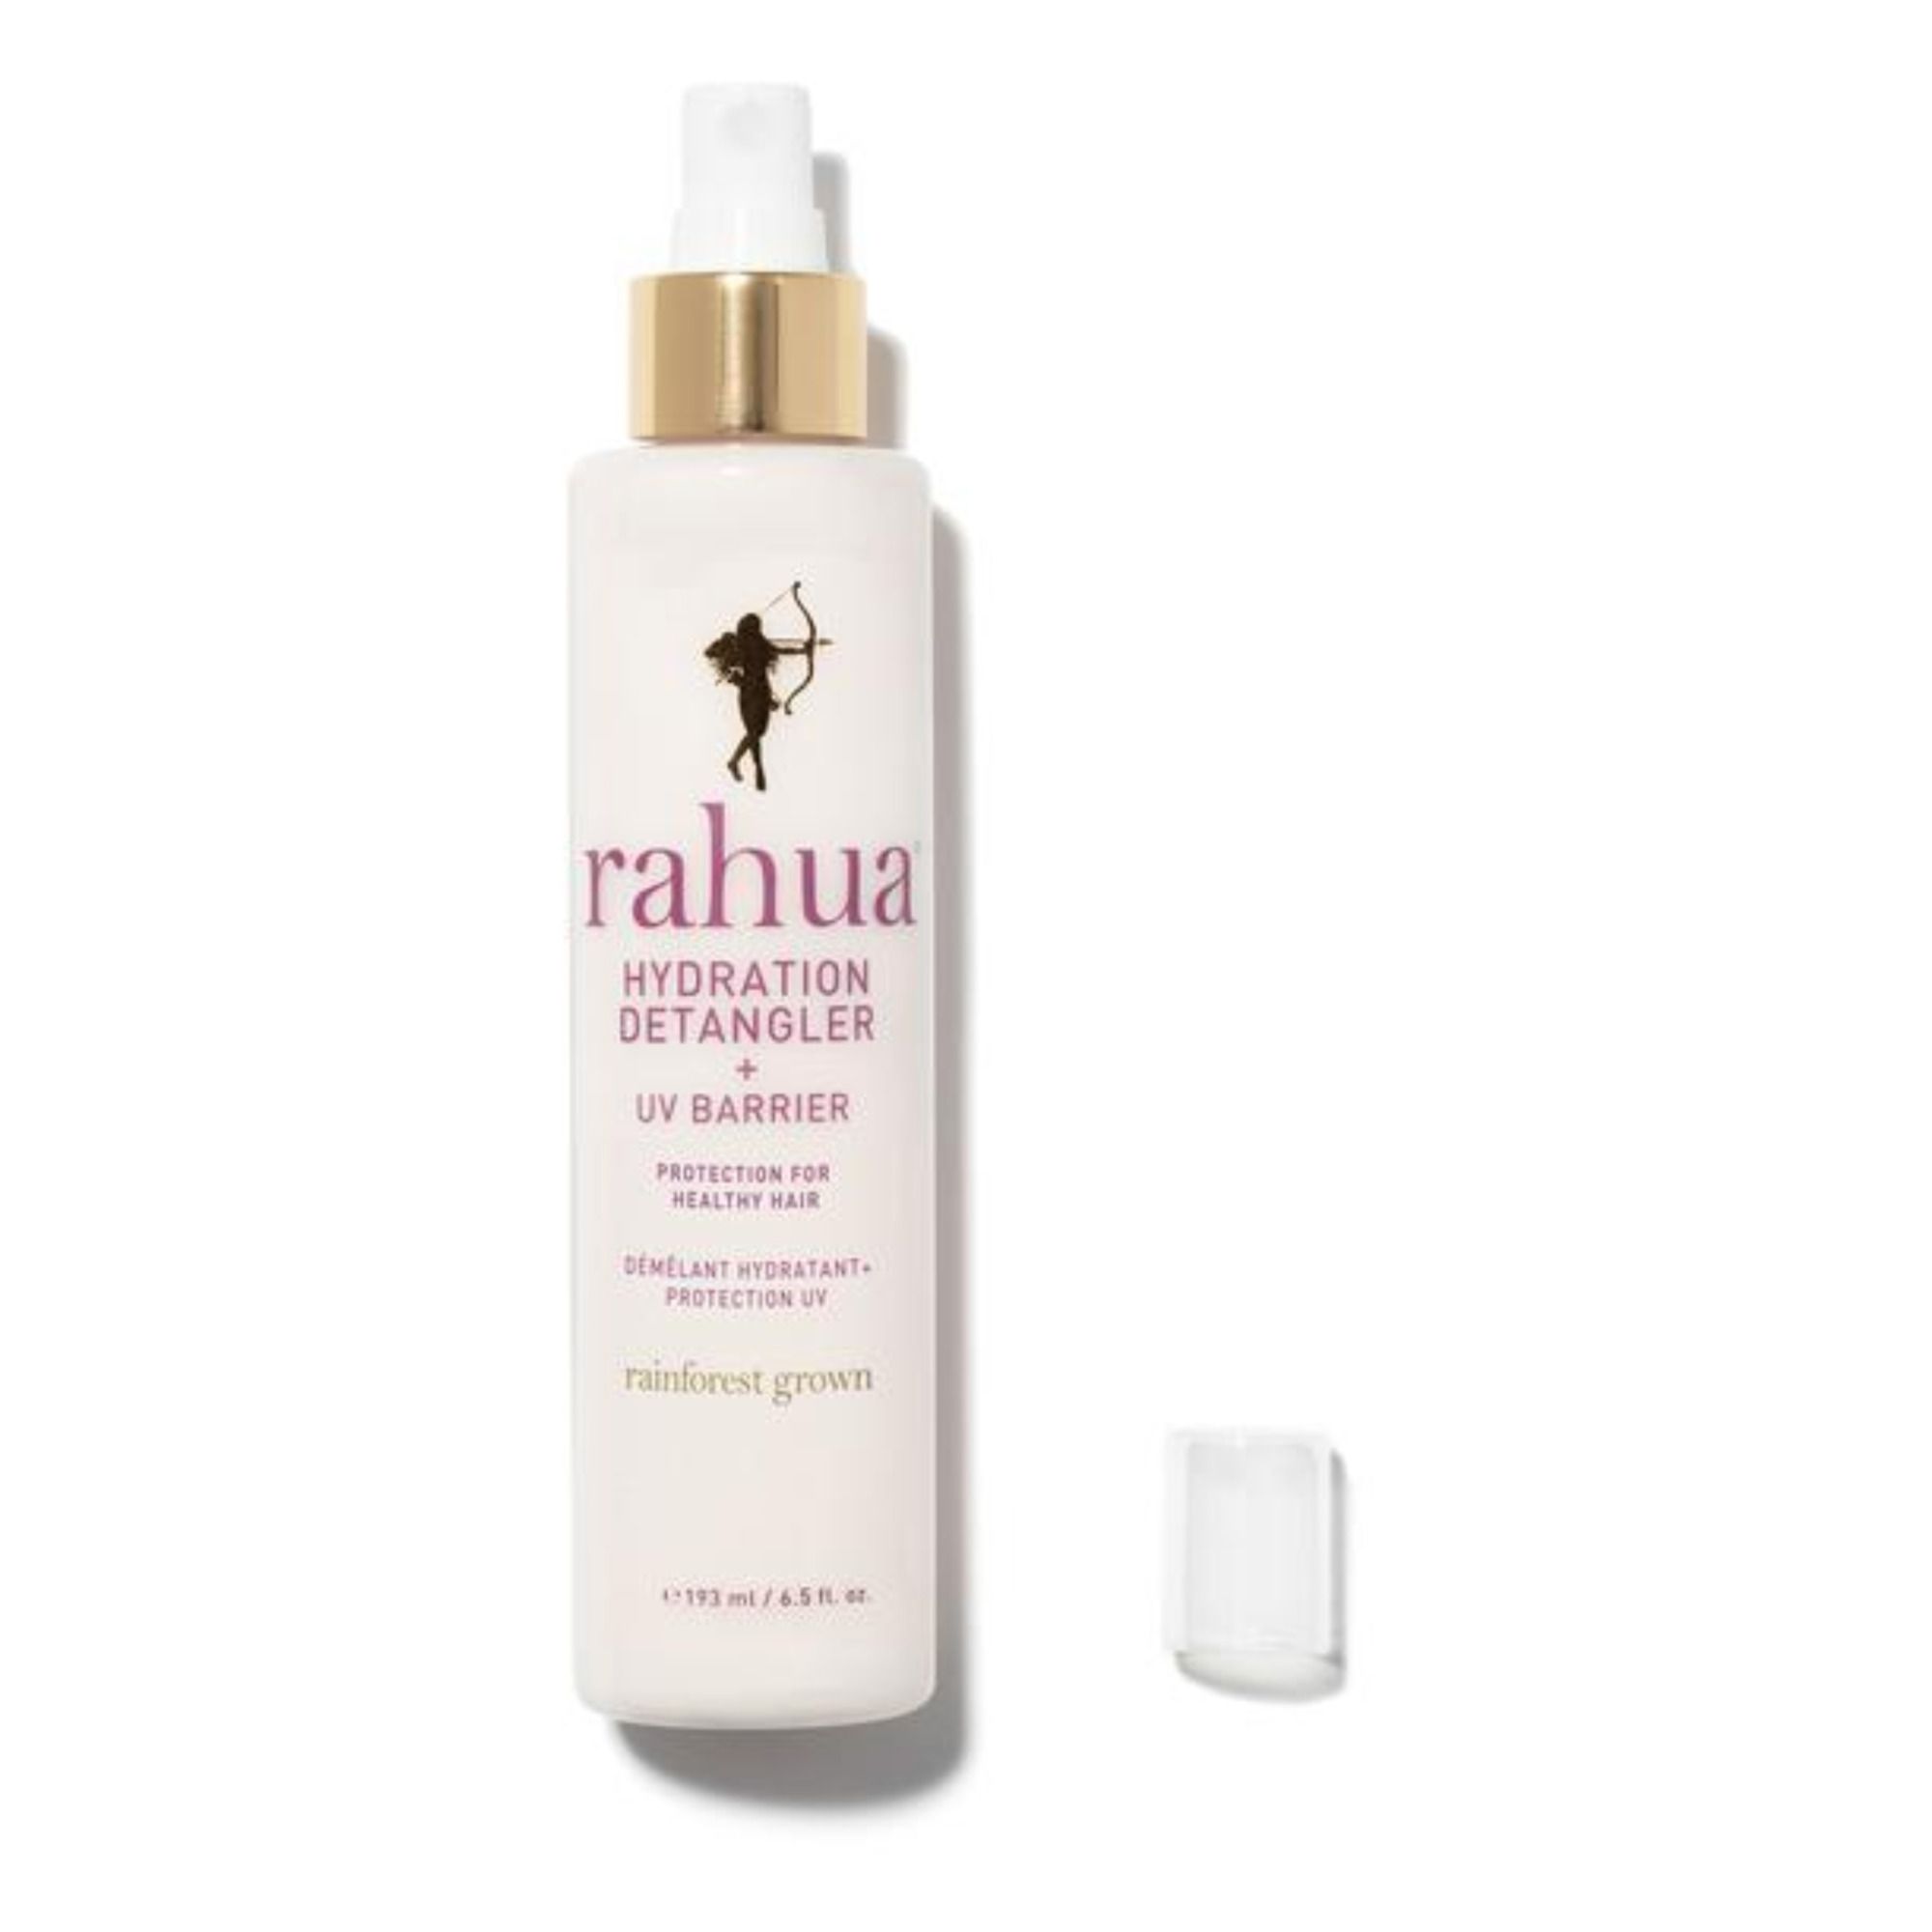 Rahua - Démélant hydratant et protection UV - 193 ml - Blanc